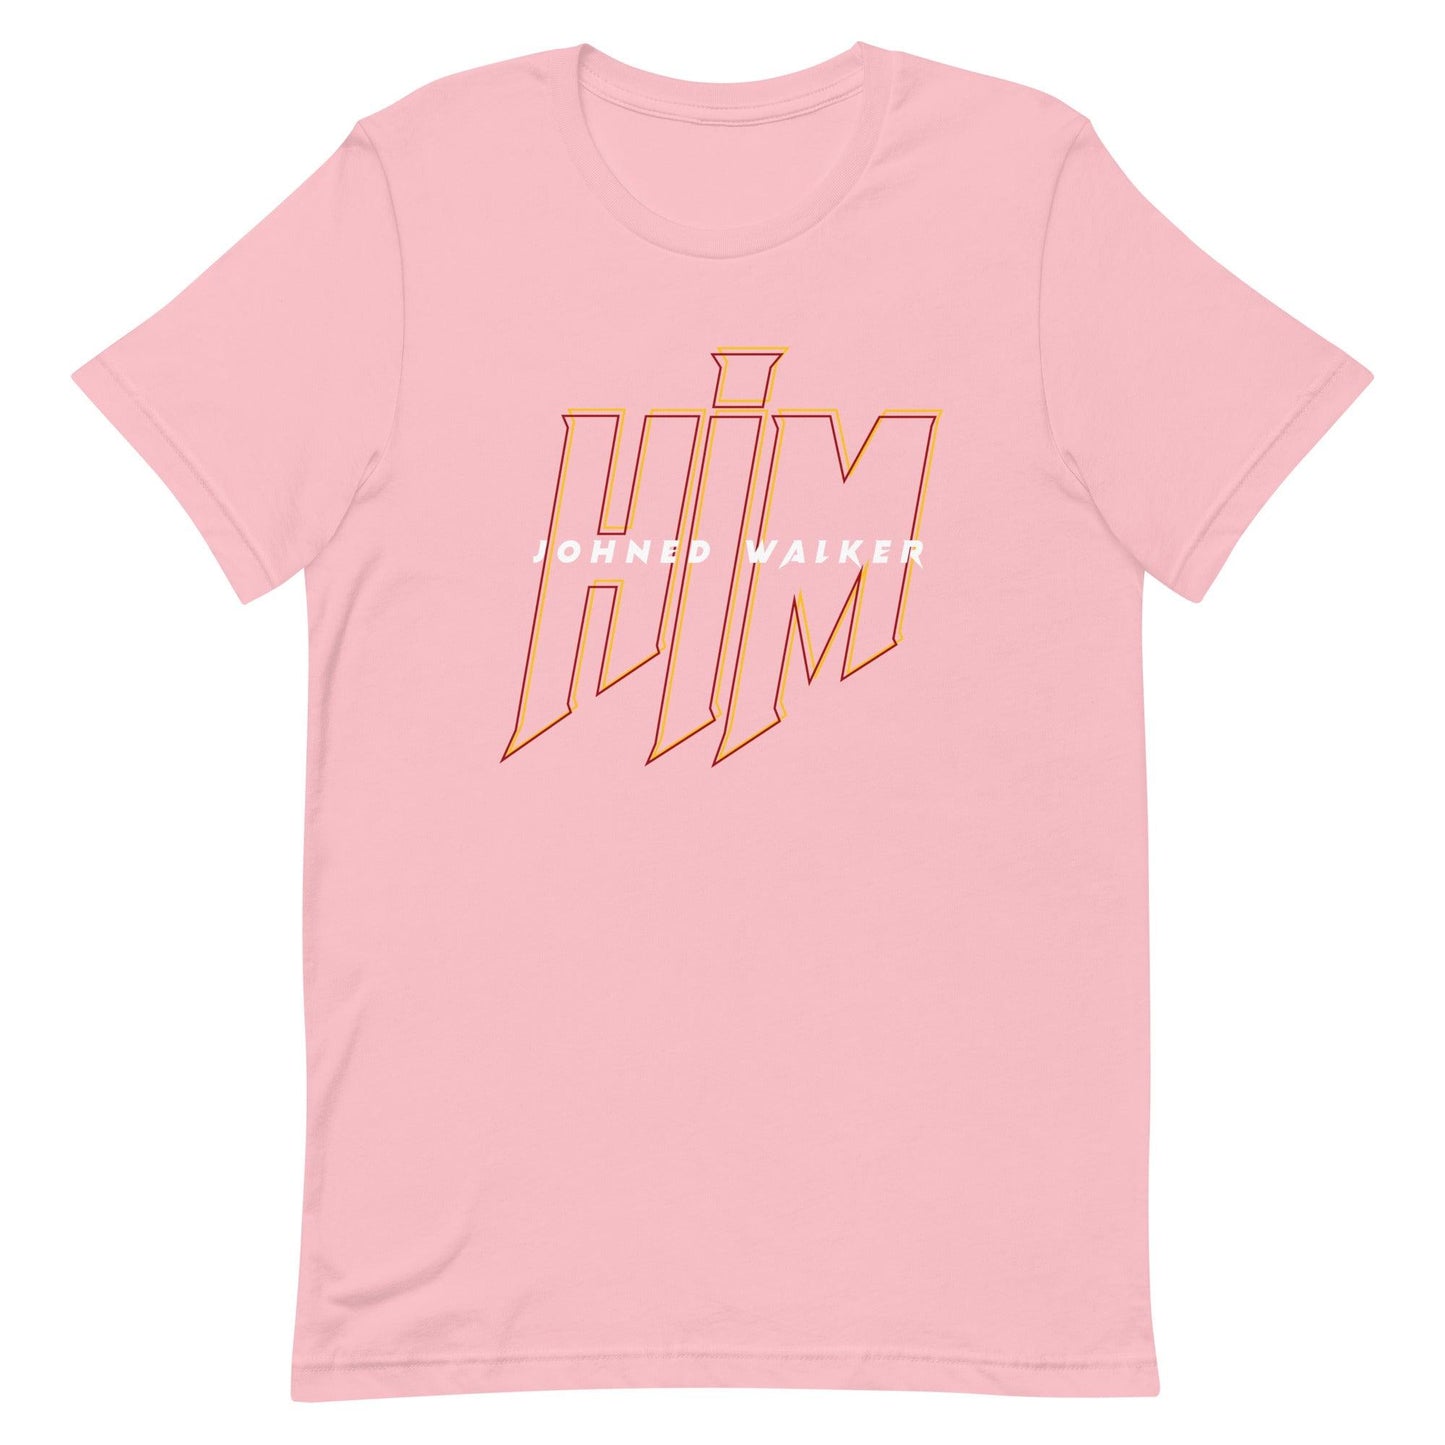 Johned Walker "HIM" t-shirt - Fan Arch